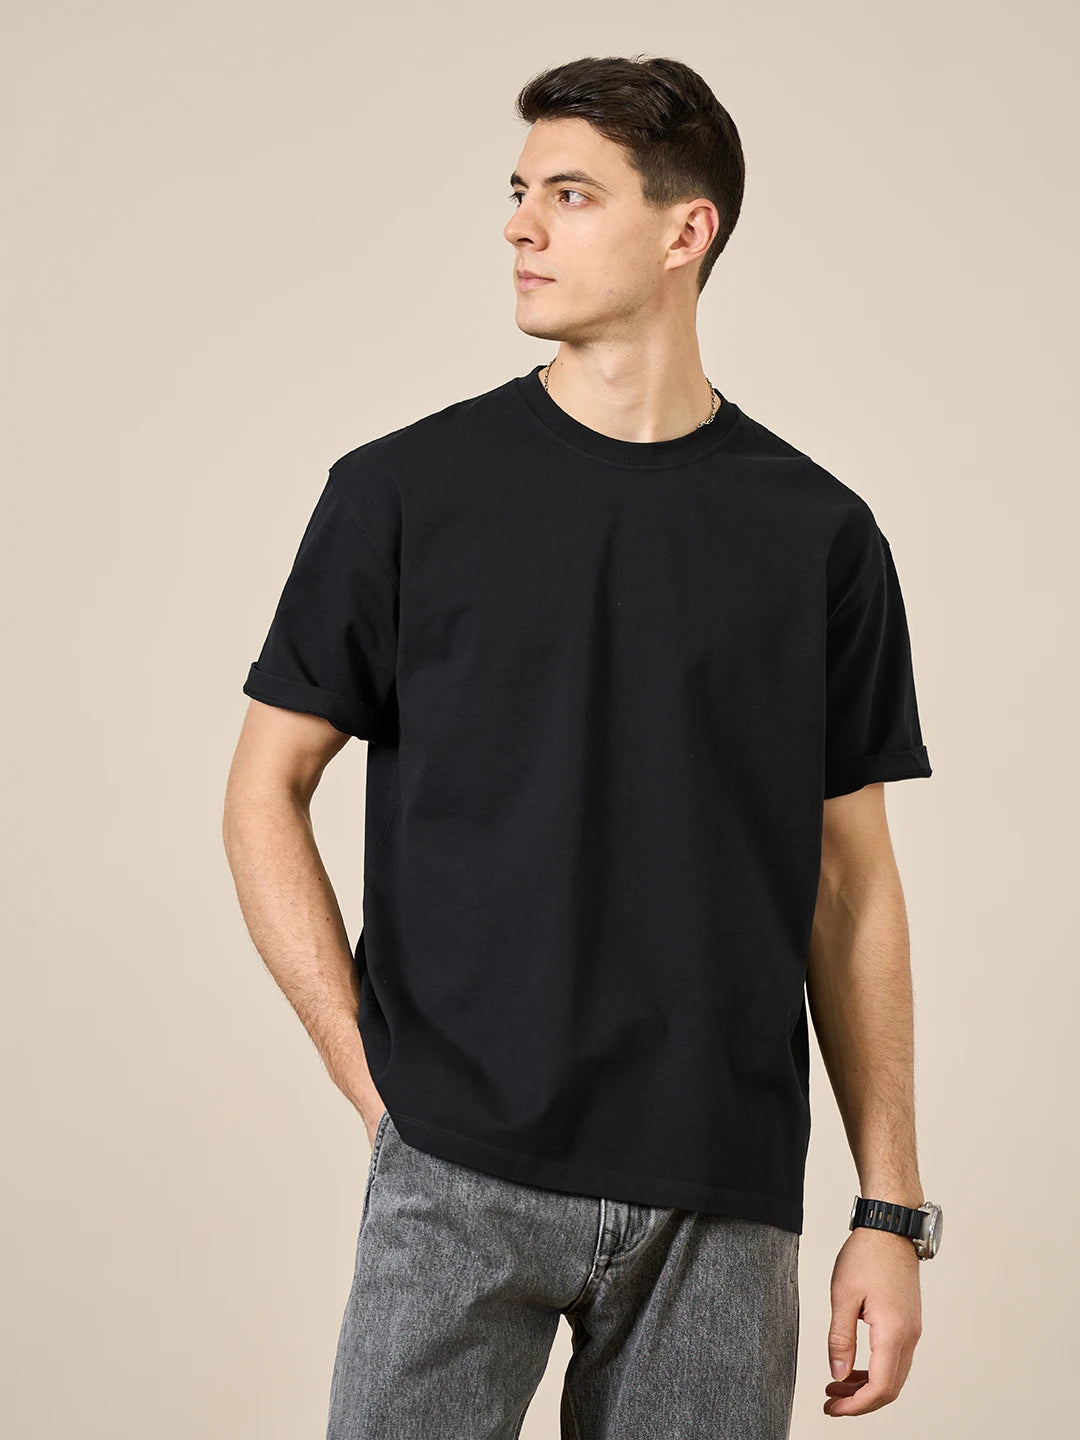 T-shirt SIMWOOD 100% coton pour hommes - Coupe ample et haute qualité